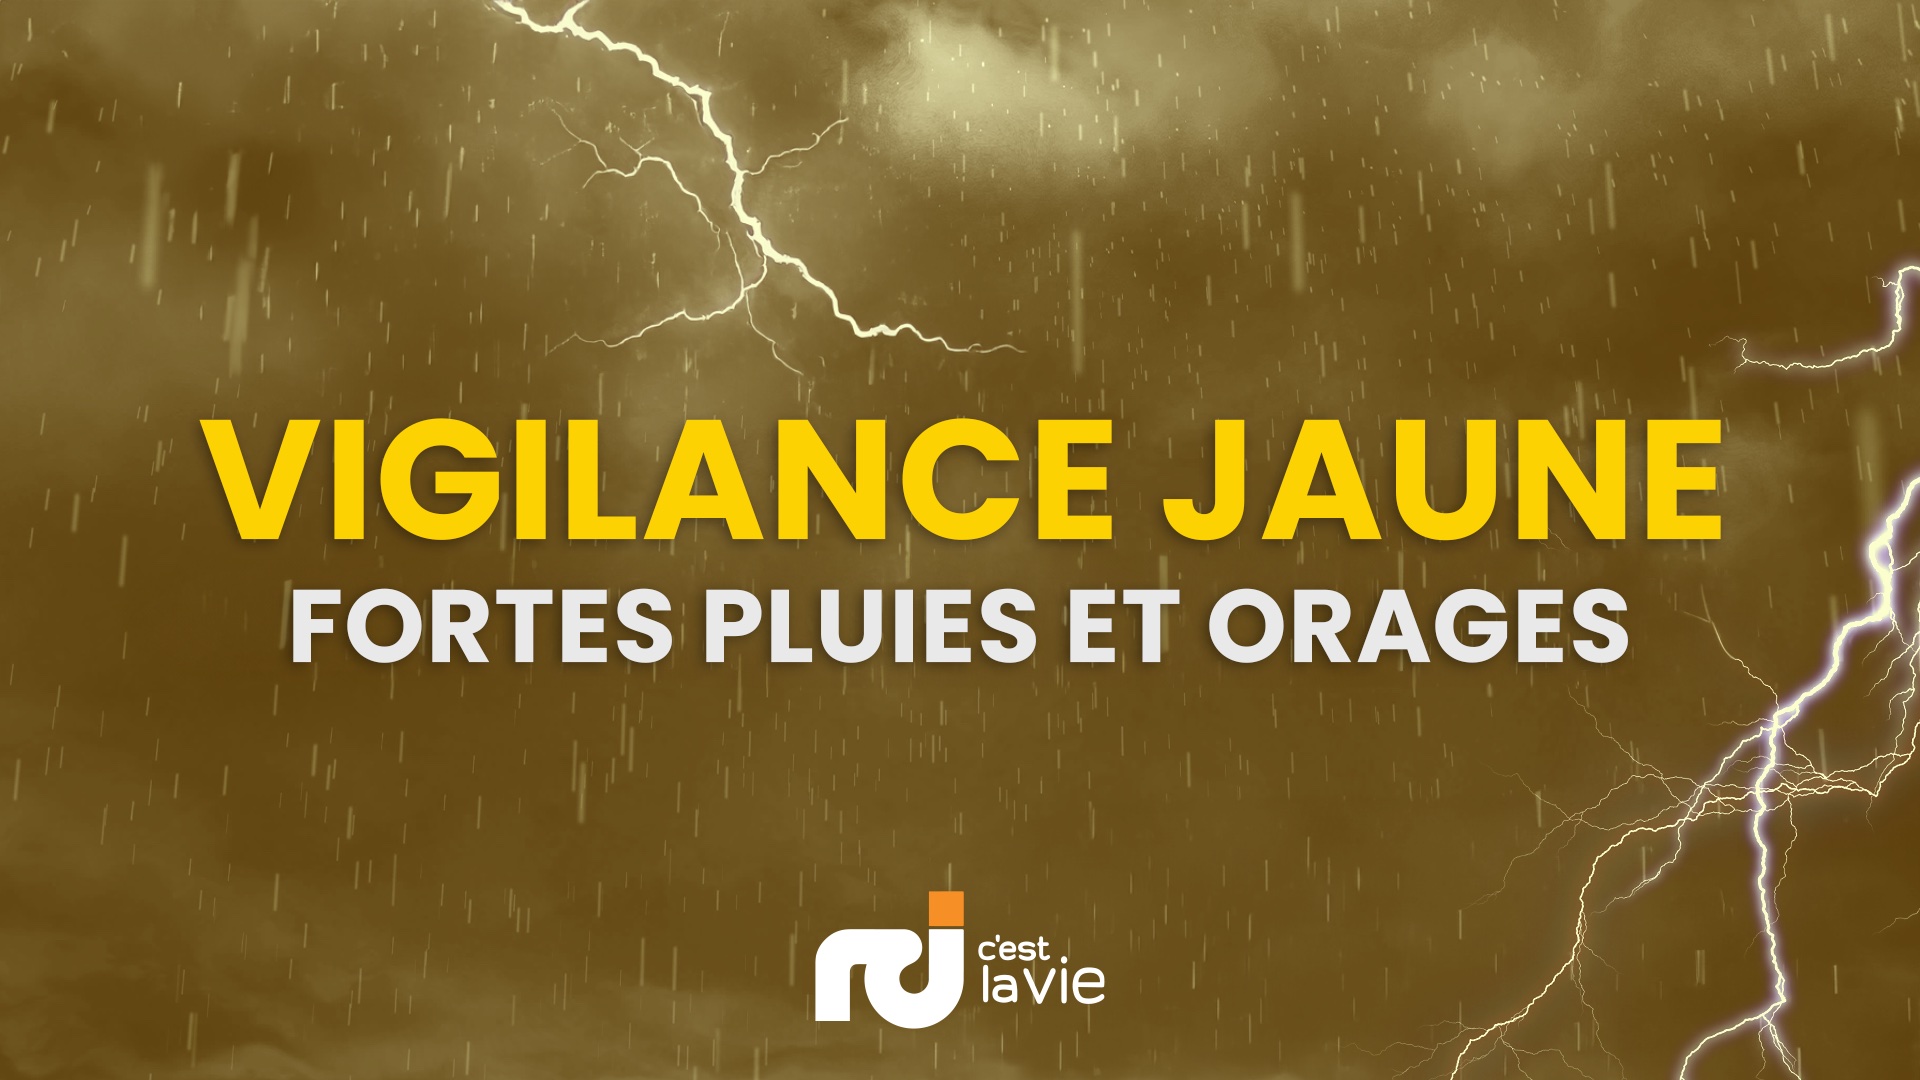     Une nouvelle onde en approche : la vigilance jaune pour fortes pluies et orages maintenue en Guadeloupe

